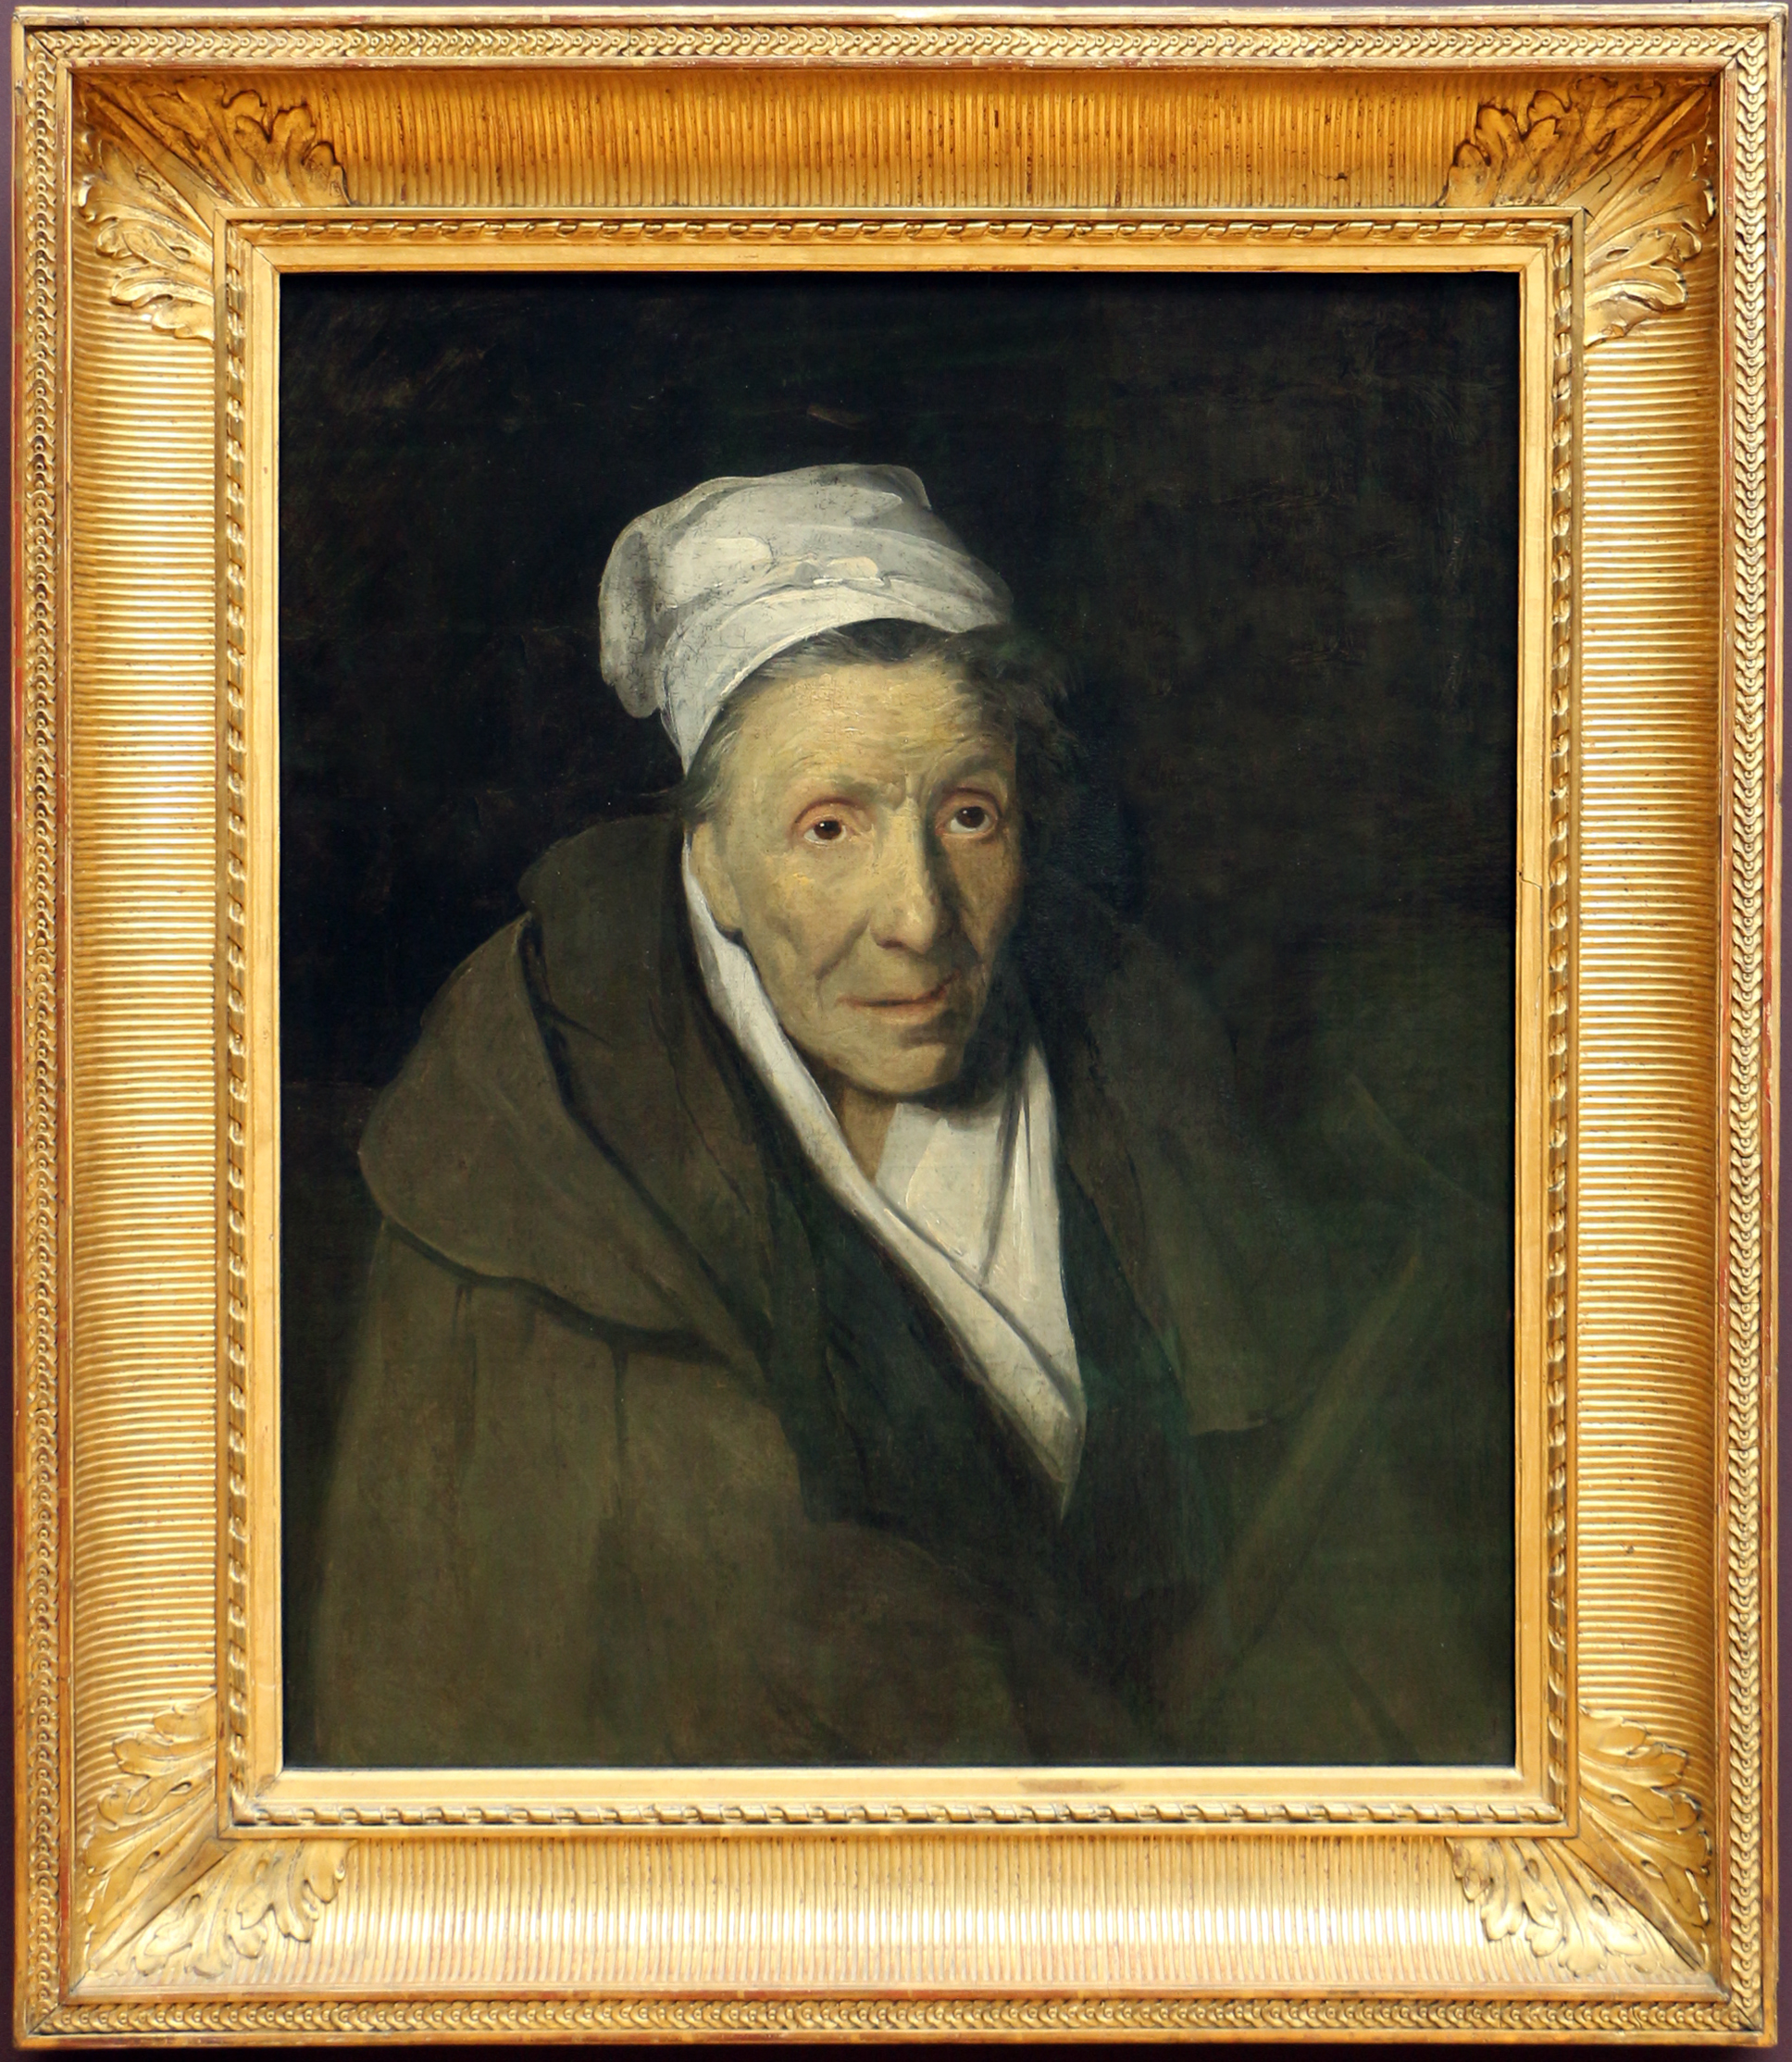 Théodore géricault, la donna ossessionata dal gioco, 1820 ca